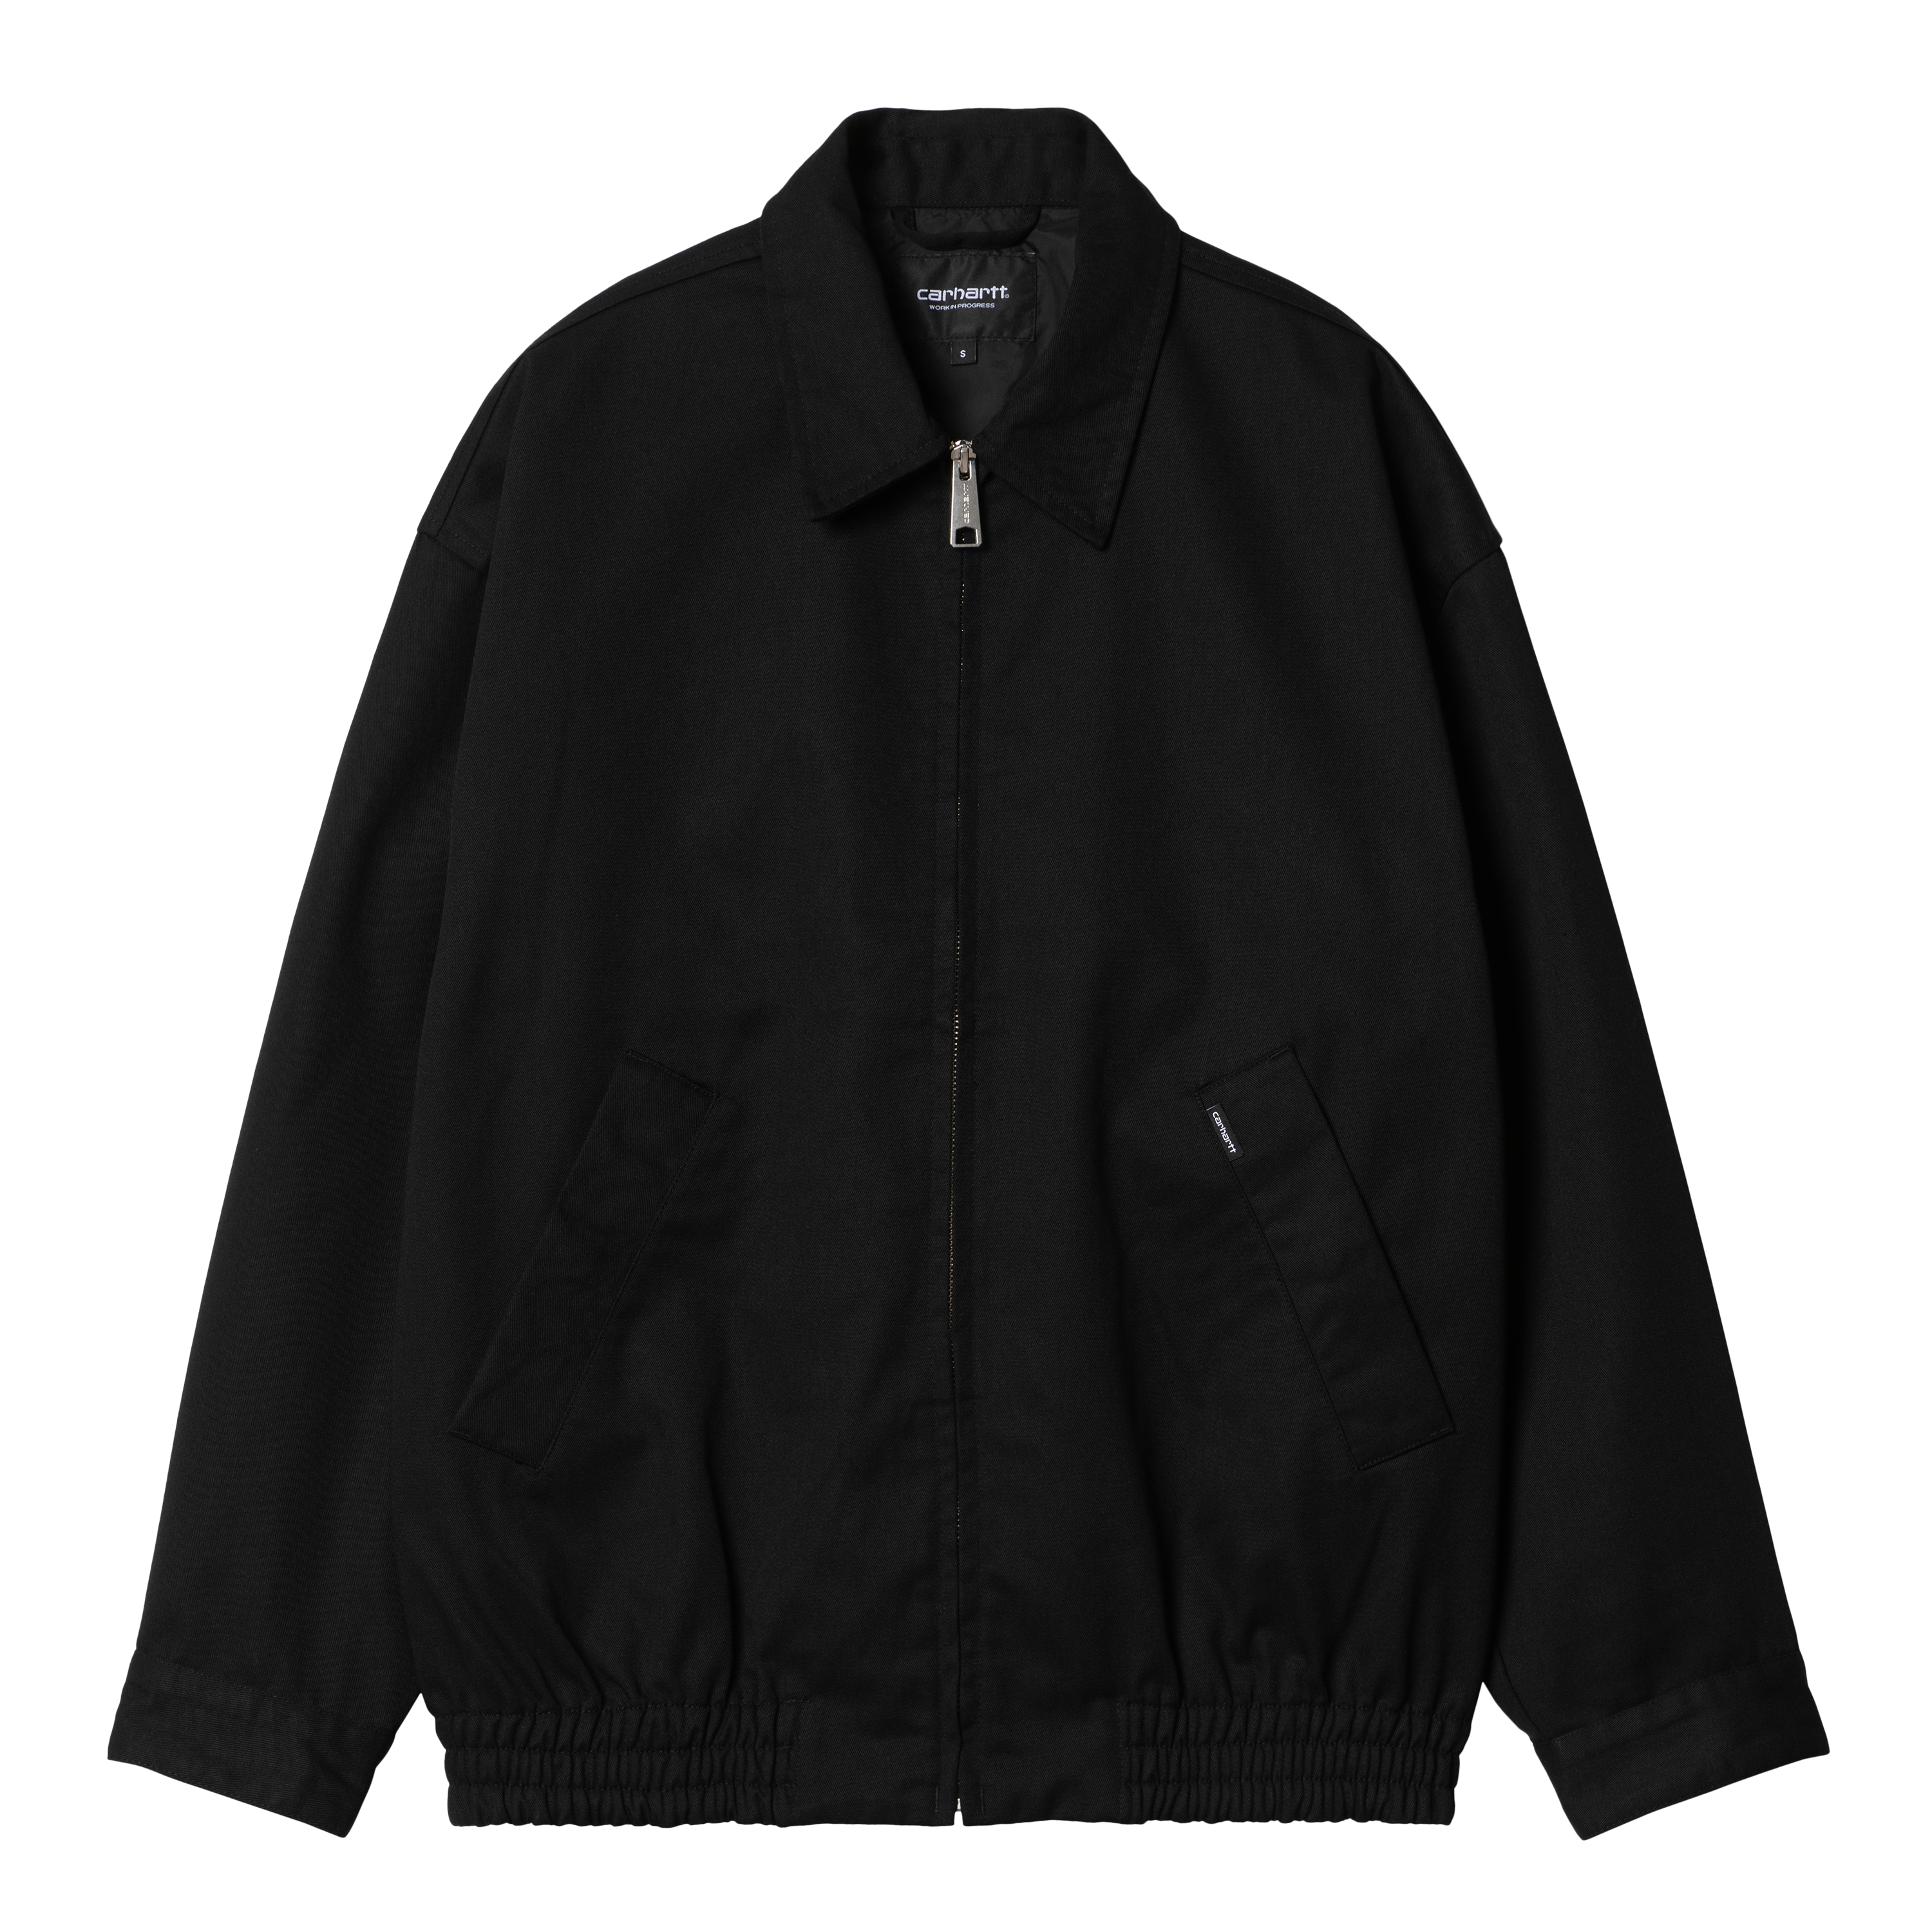 Carhartt WIP Women’s Newhaven Jacket in Black